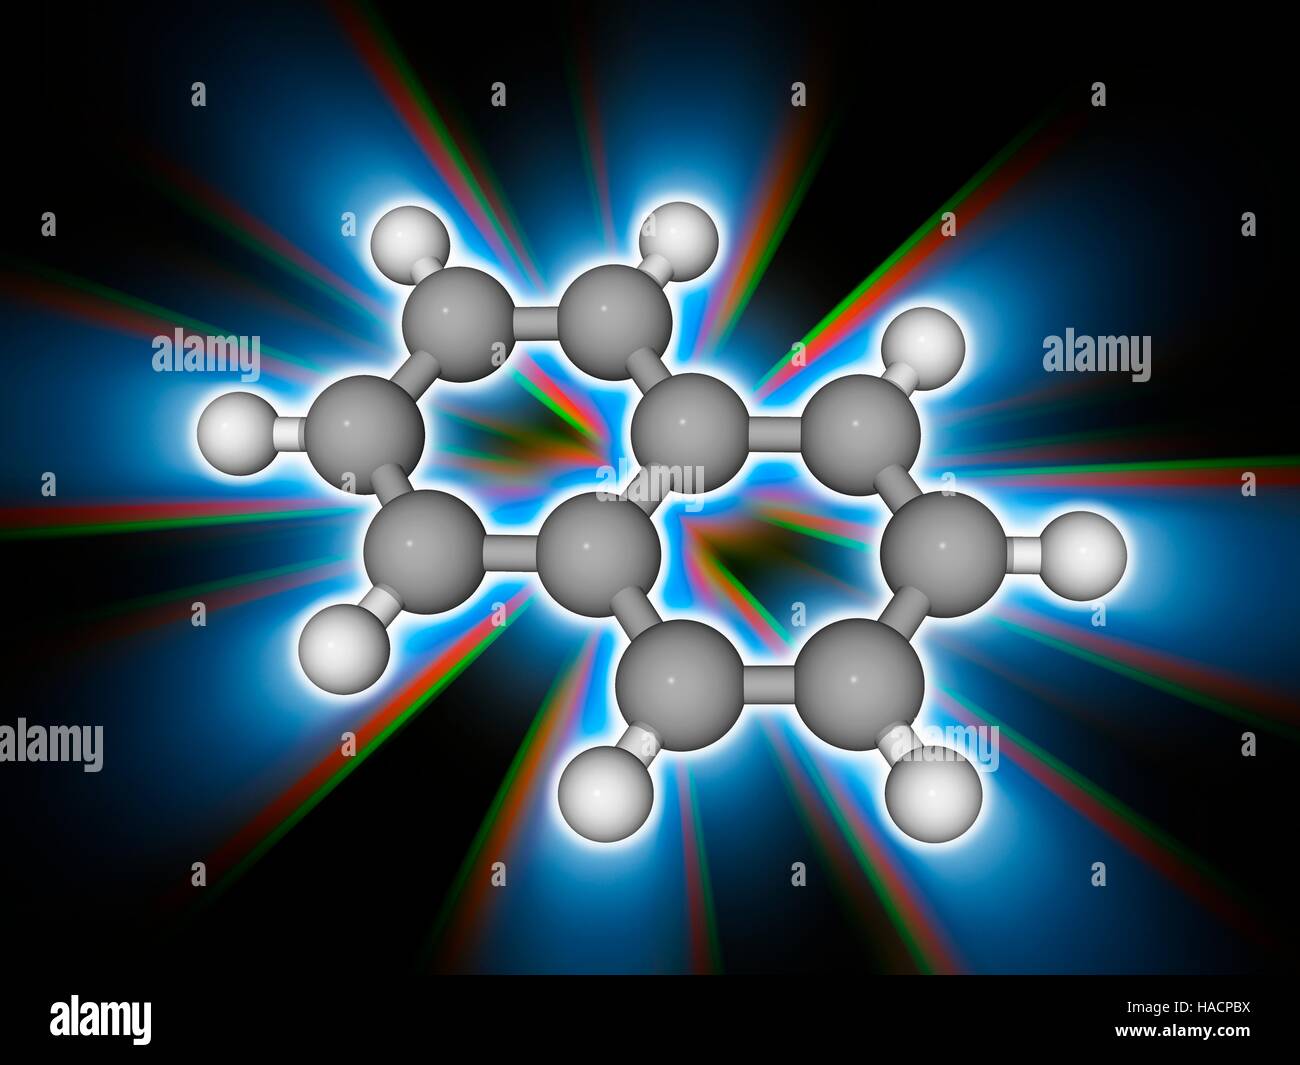 Naphthalin. Molekulares Modell des organischen Verbindung Naphthalin (C10. H8), eine weiße, kristalline Pulver am besten bekannt als der Hauptbestandteil von Mottenkugeln. Es ist die einfachste polyzyklischer aromatischer Kohlenwasserstoffe. Atome als Kugeln dargestellt werden und sind farblich gekennzeichnet: Kohlenstoff (grau) und Wasserstoff (weiß). Abbildung. Stockfoto